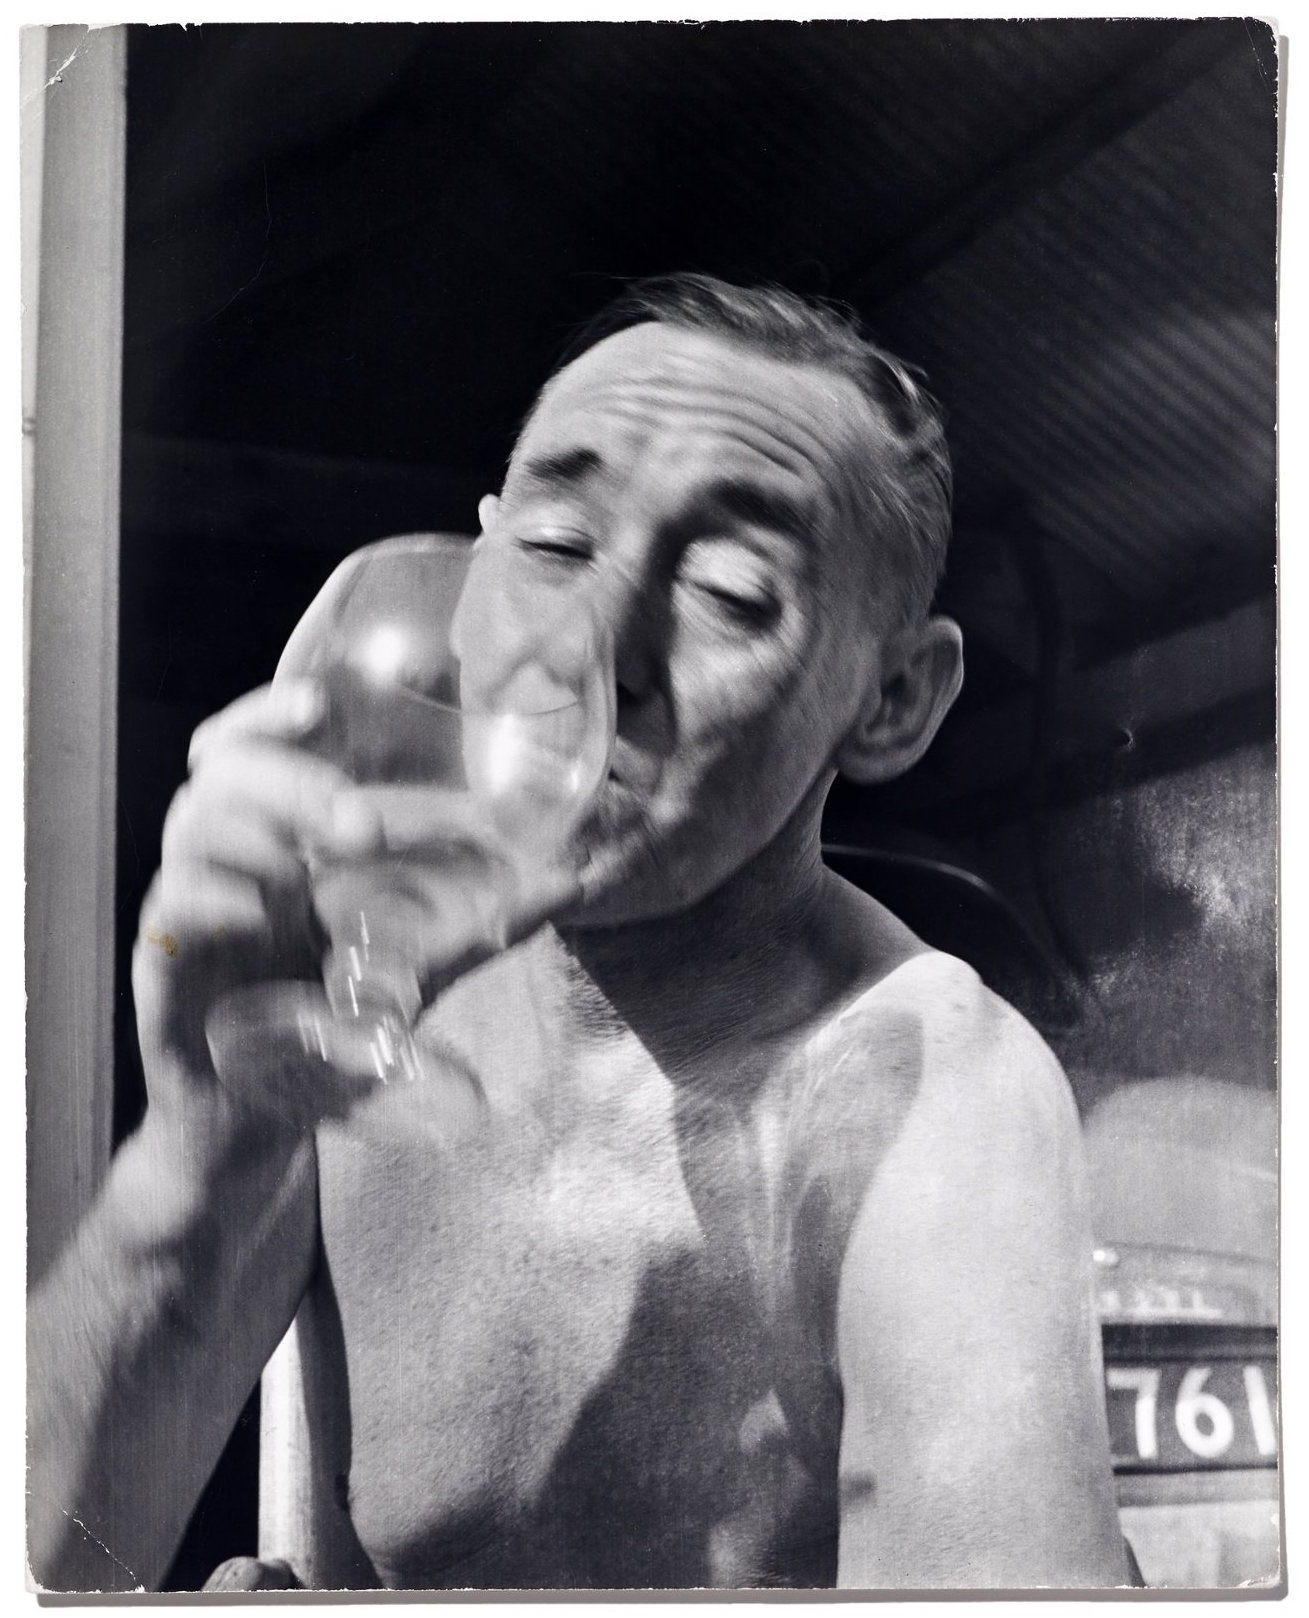 Deakin drinking, 1960s. John Deakin, courtesy Robin Muir